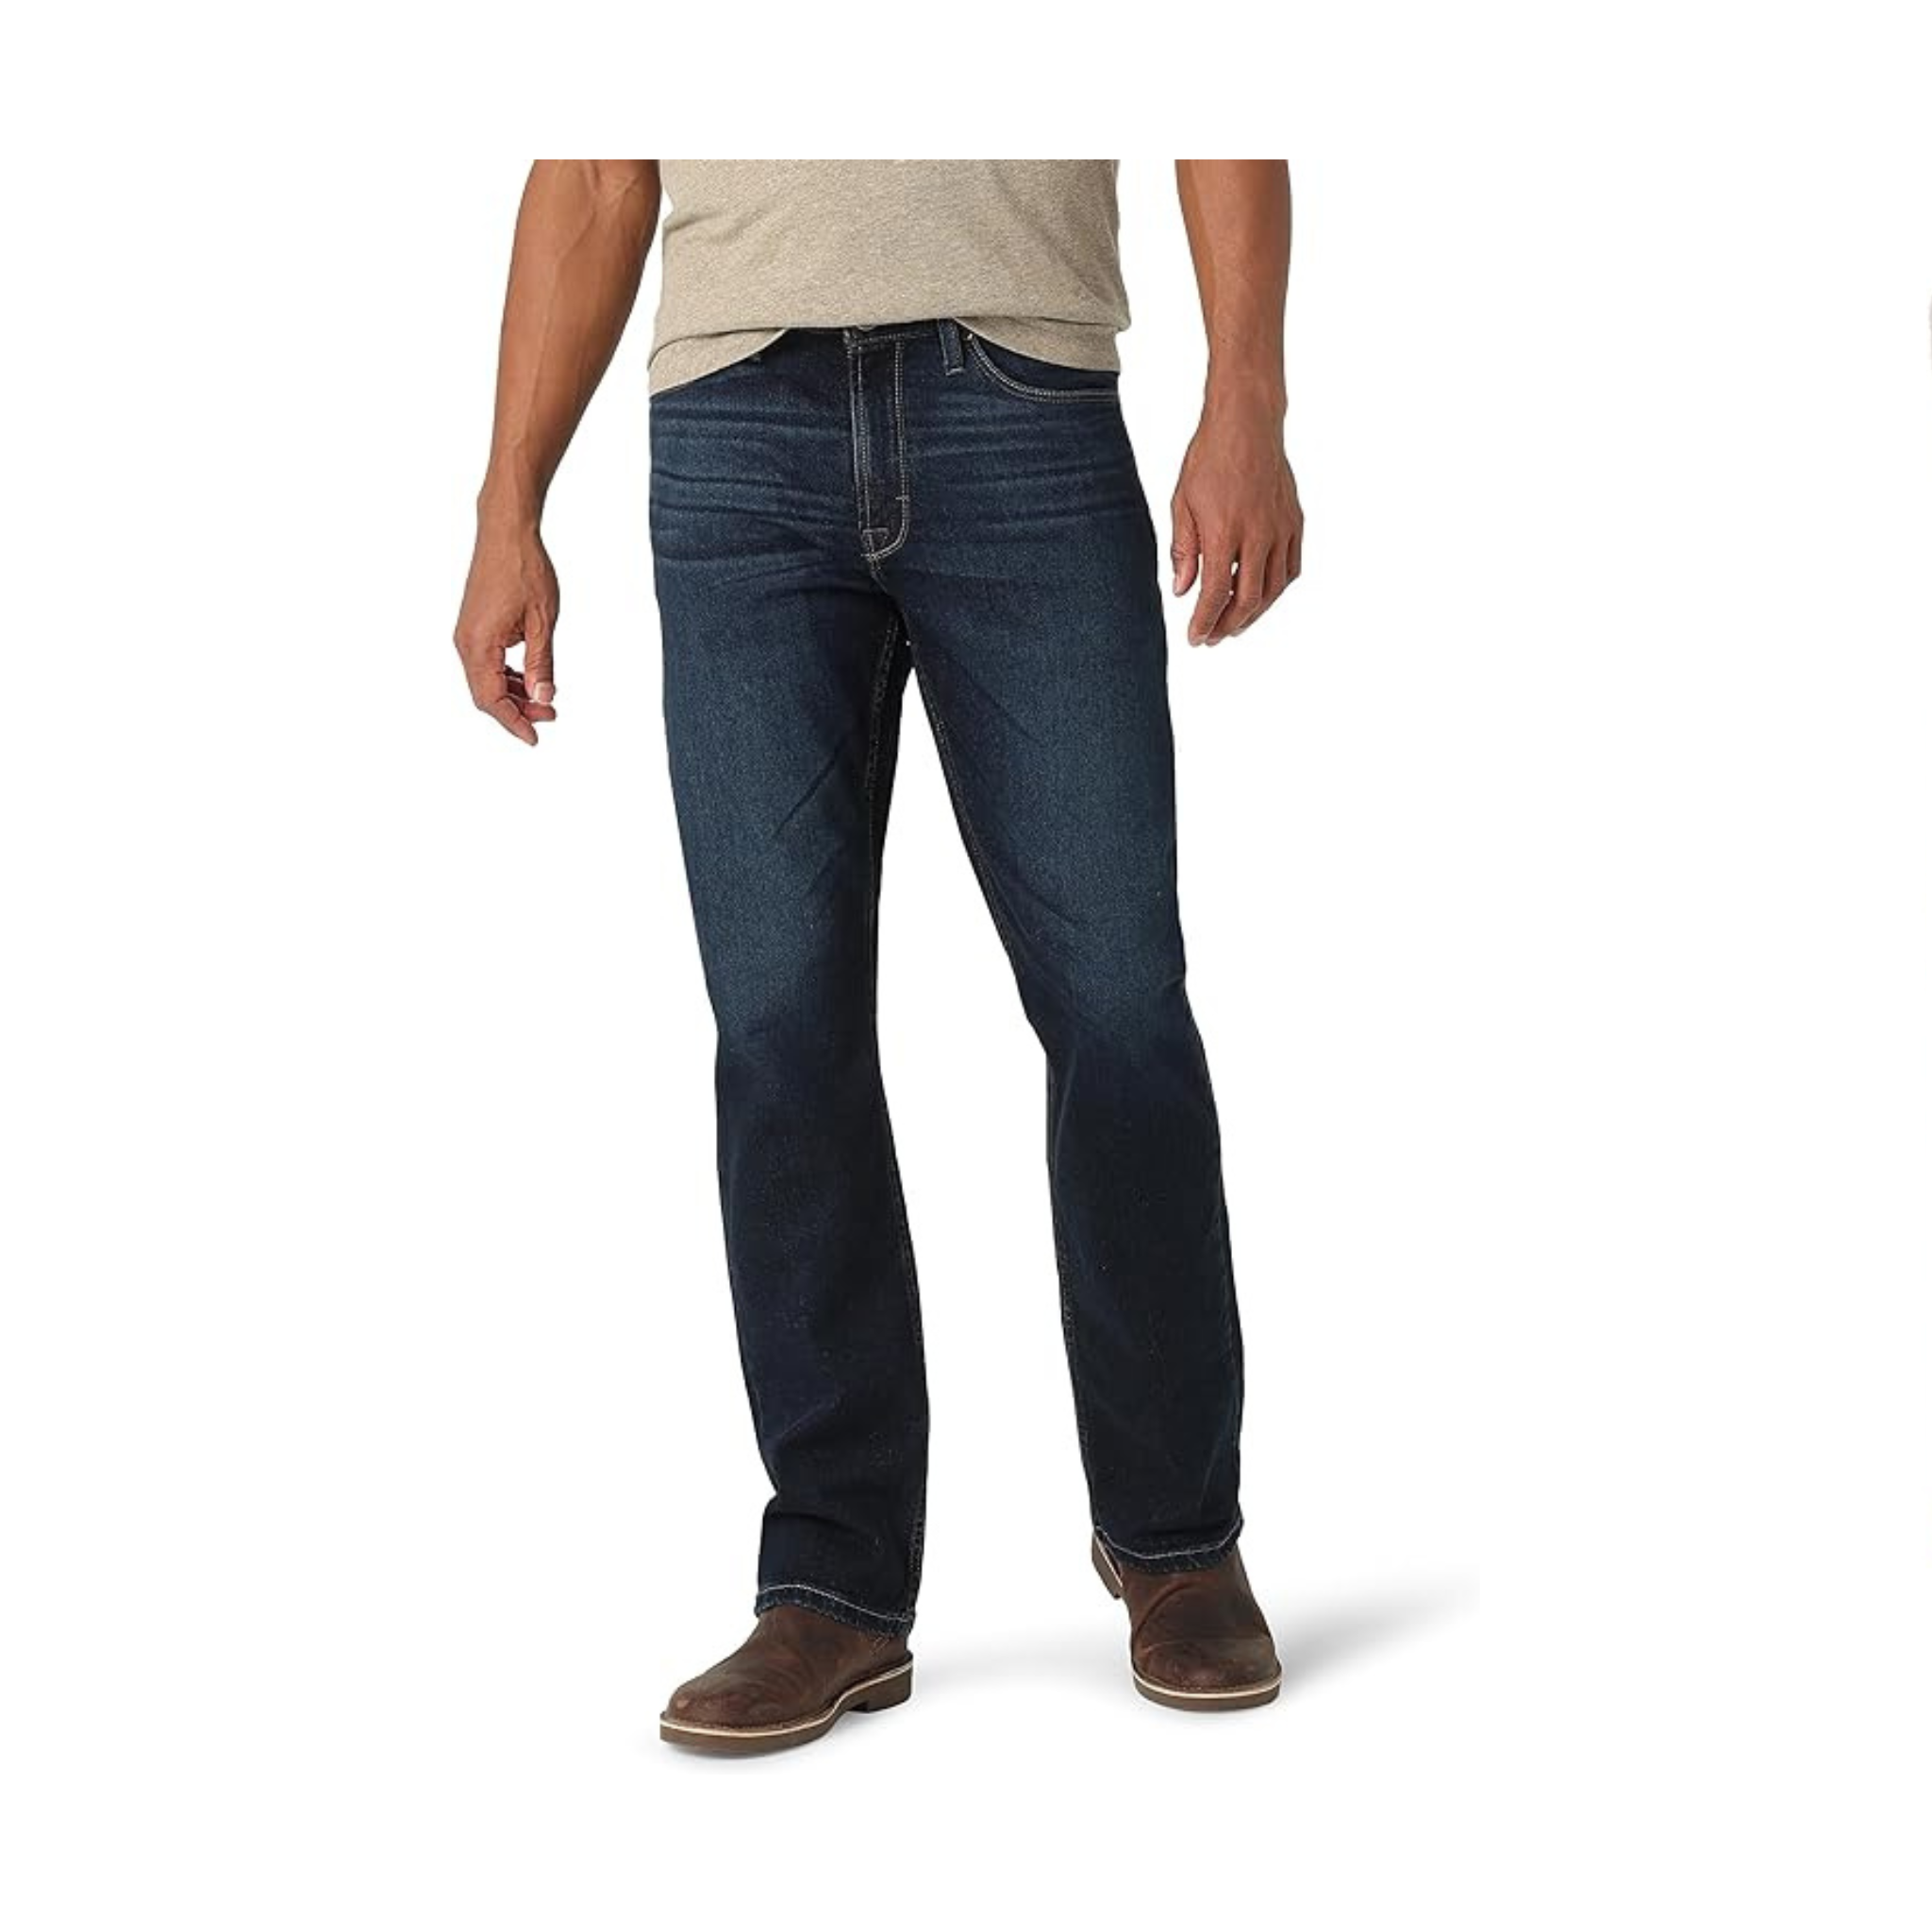 Wrangler Jeans con corte de bota de ajuste relajado para hombre (Godwin u Oxford Blue) 